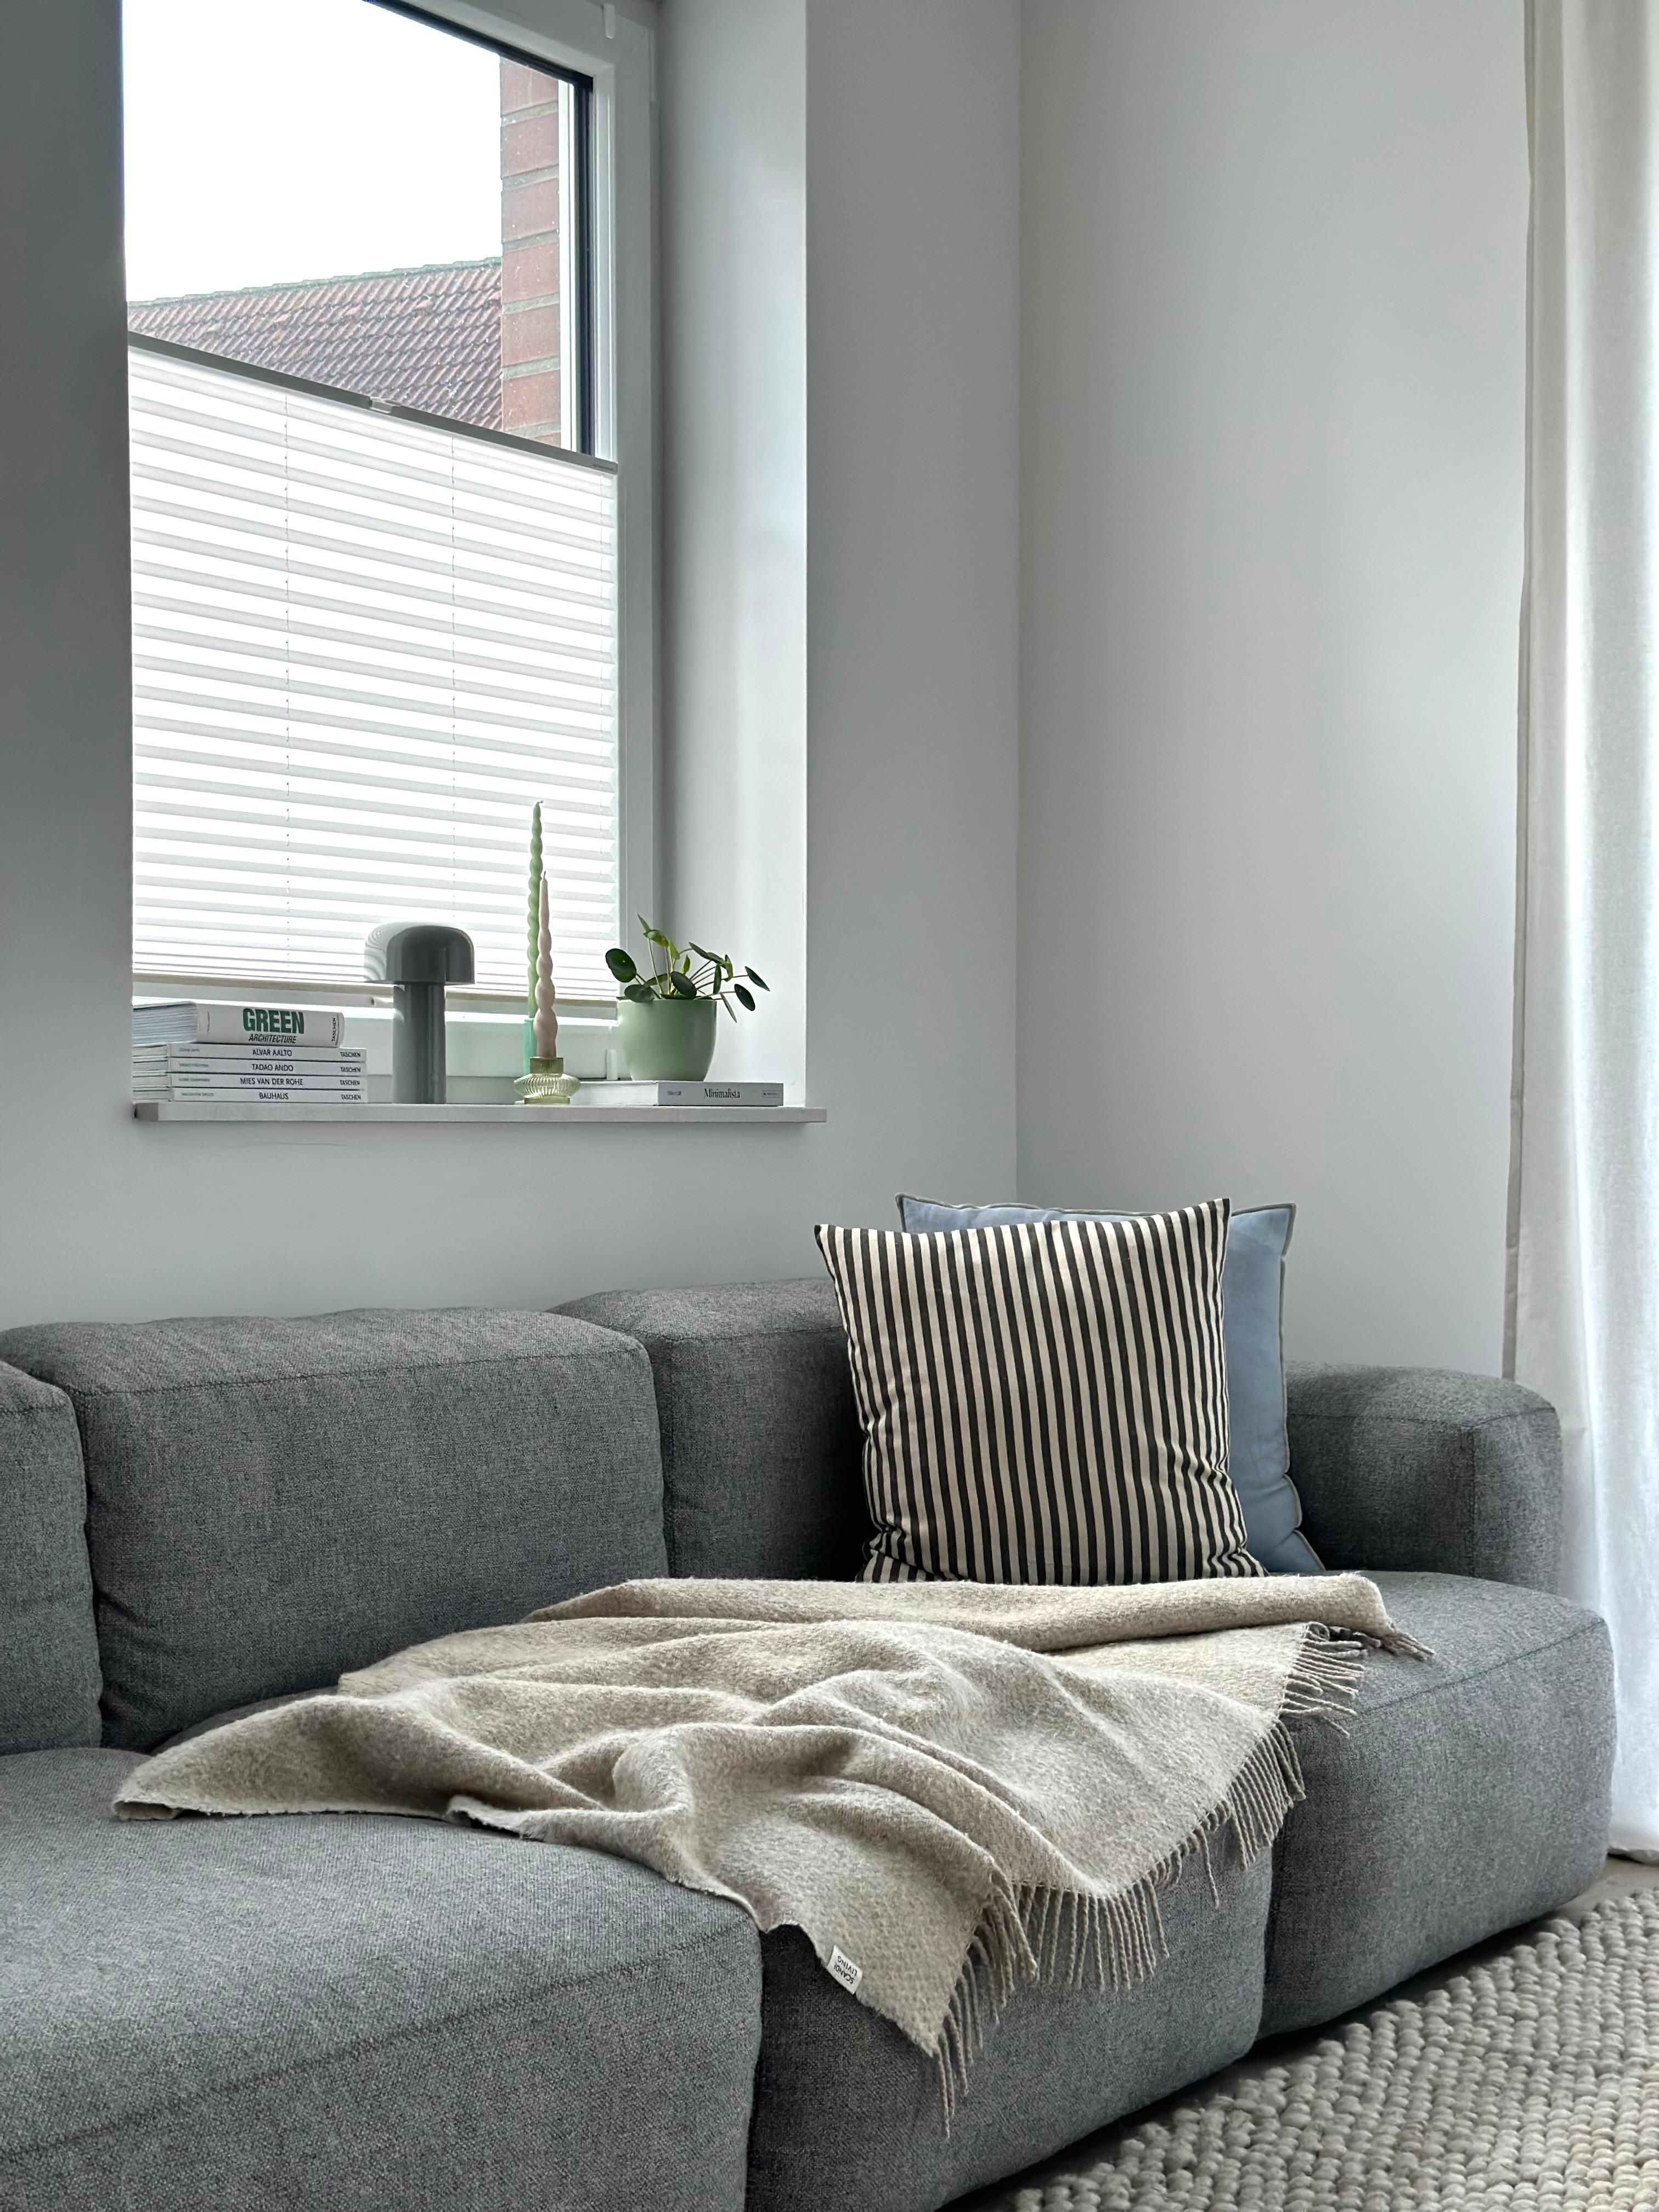 #wohnzimmer #sofa #couchliebt #haydesign #sofakissen #wolldecke #fensterbankdeko #dekoideen #grauessofa 🛋️